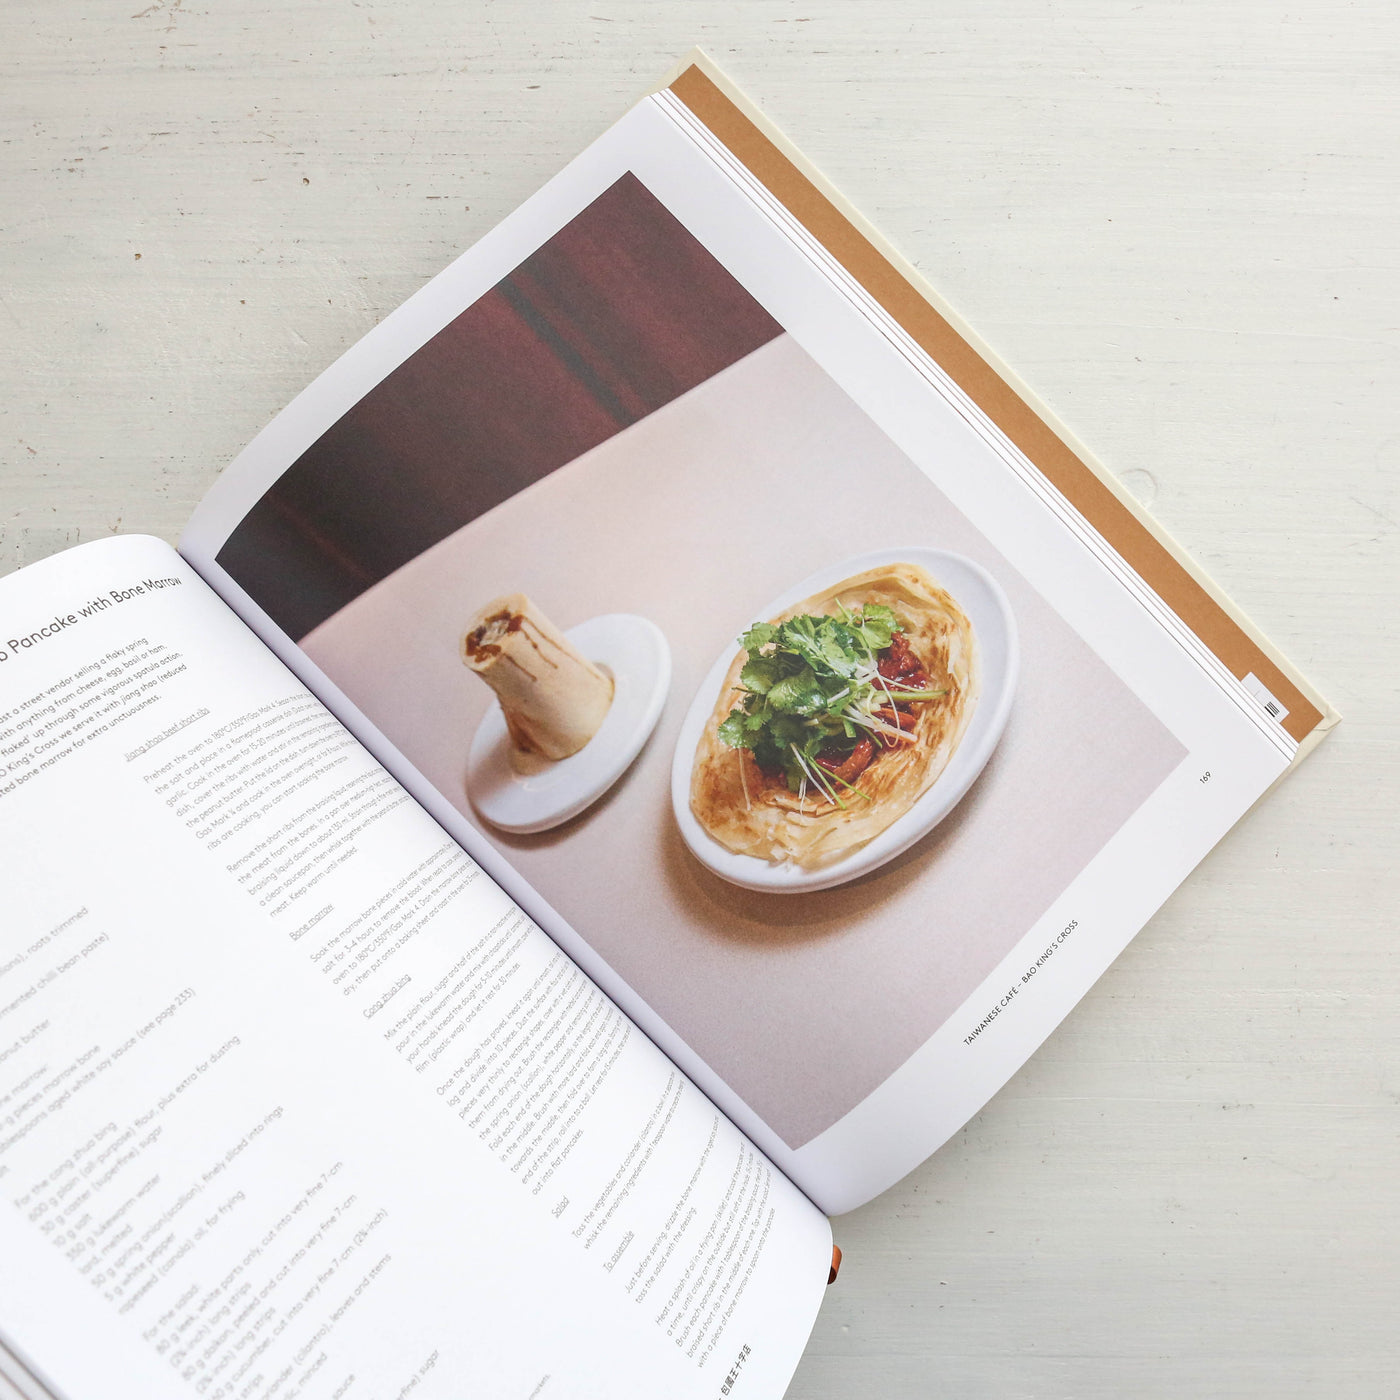 Bao Recipe Book